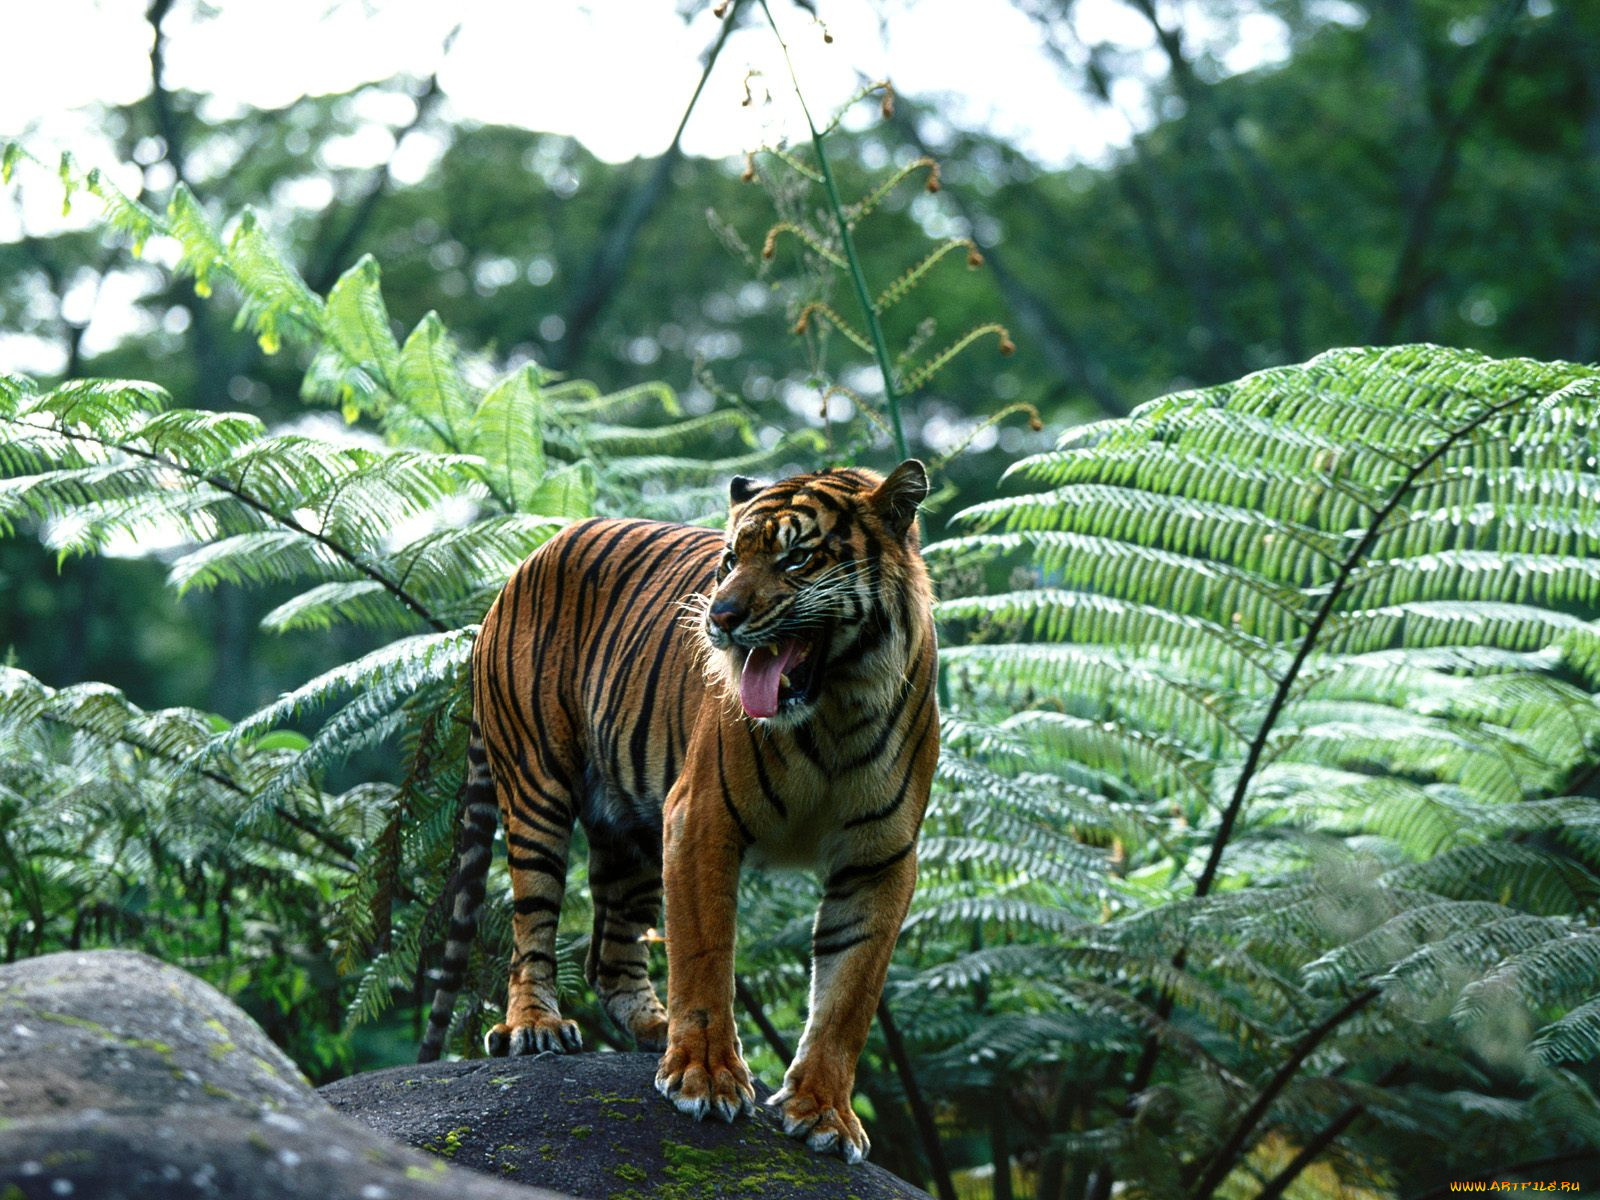 Jungle tiger. Суматранский тигр в дикой природе. Тигр тропического леса Индии. Индокитайский тигр. Суматранский тигр симулятор.